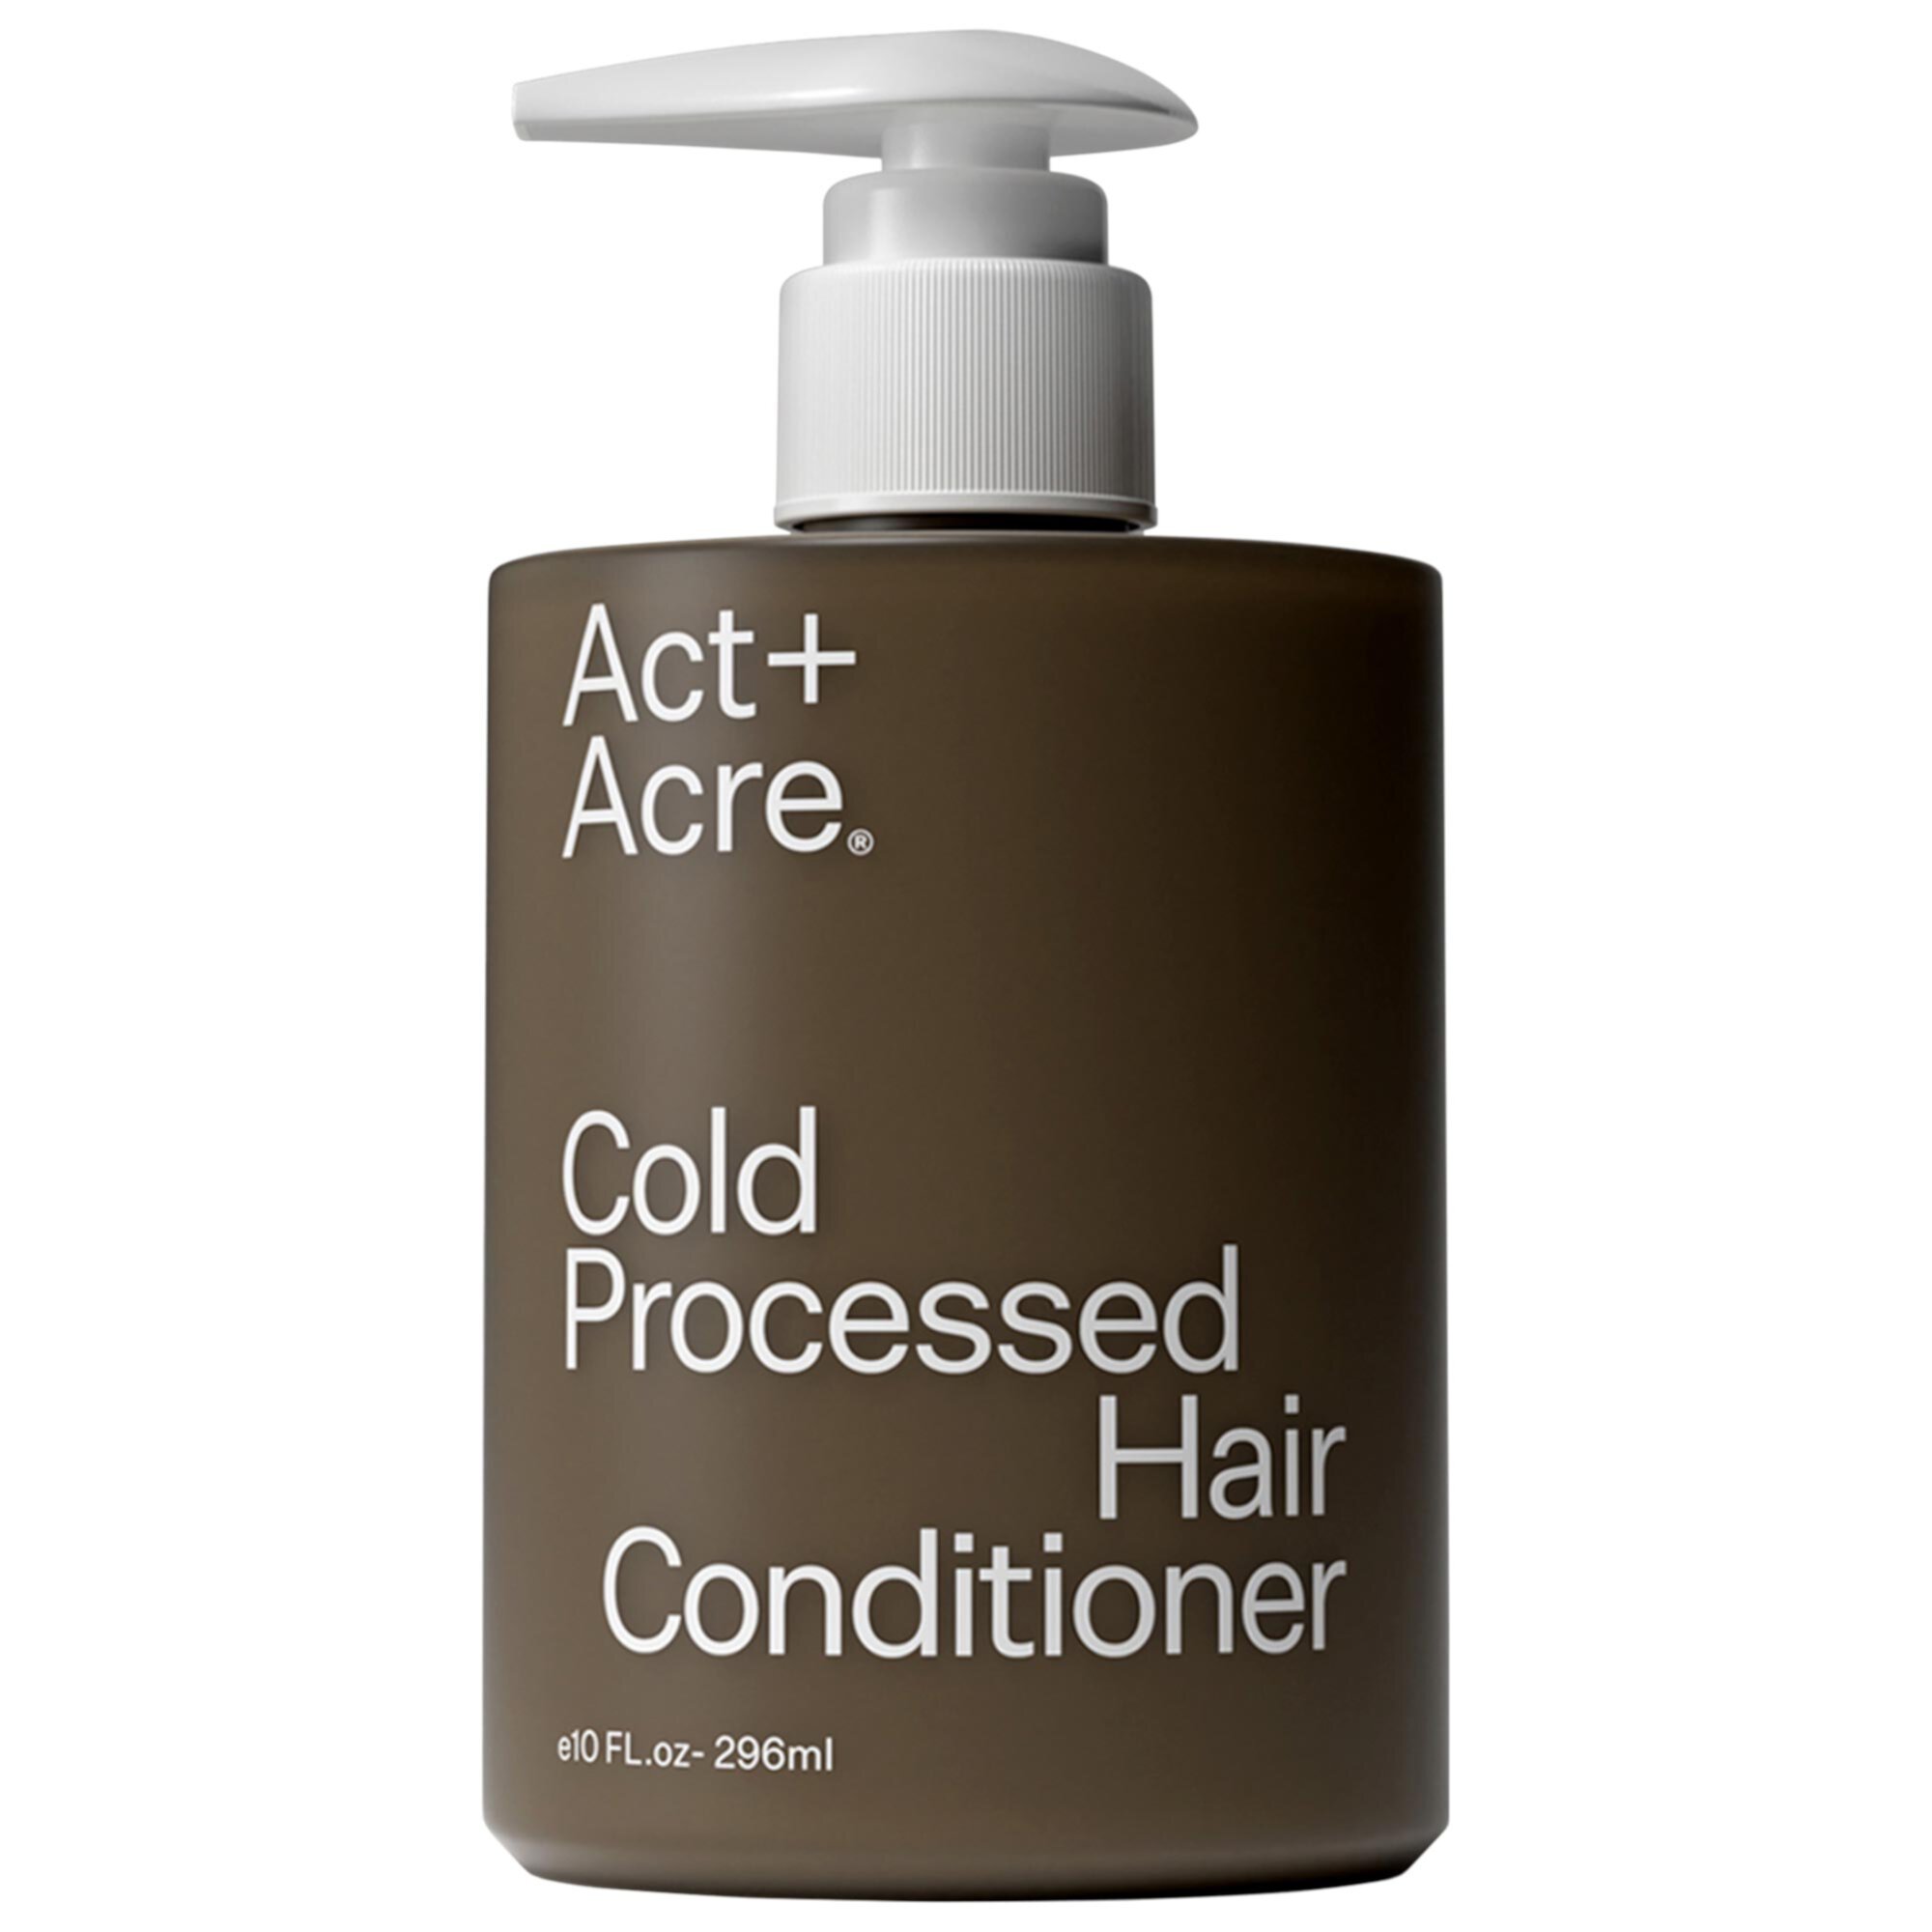 Кондиционер для волос холодной обработки с 1% витамина B-5 Act+Acre